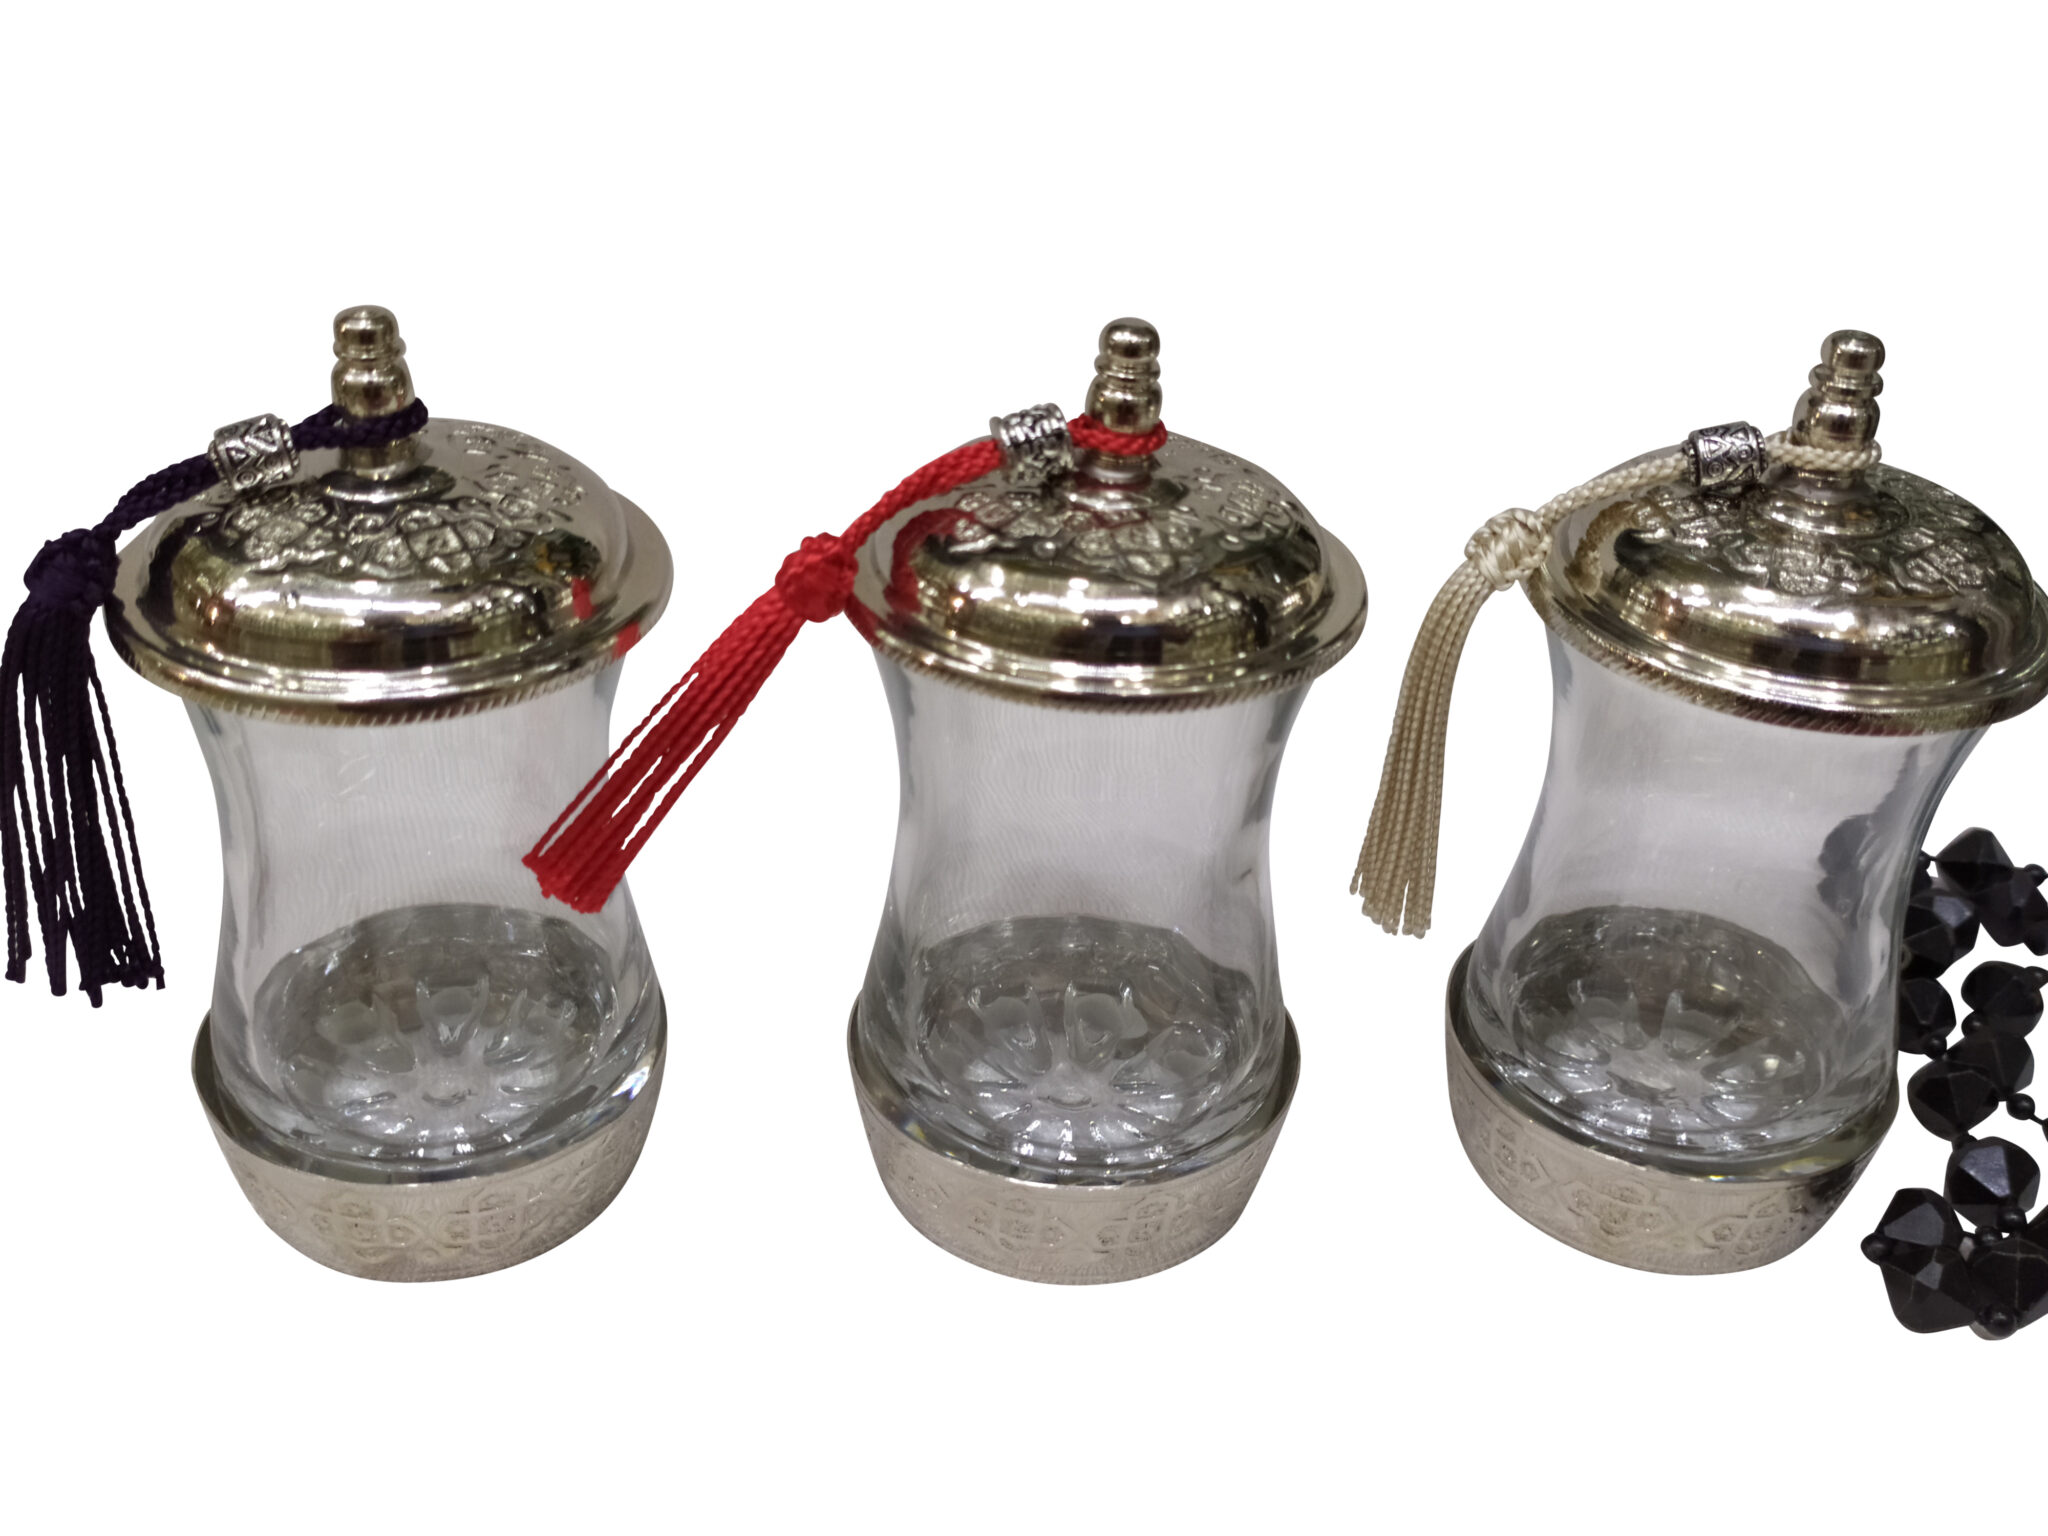 verres à thé marocain Helab avec motifs métalliques